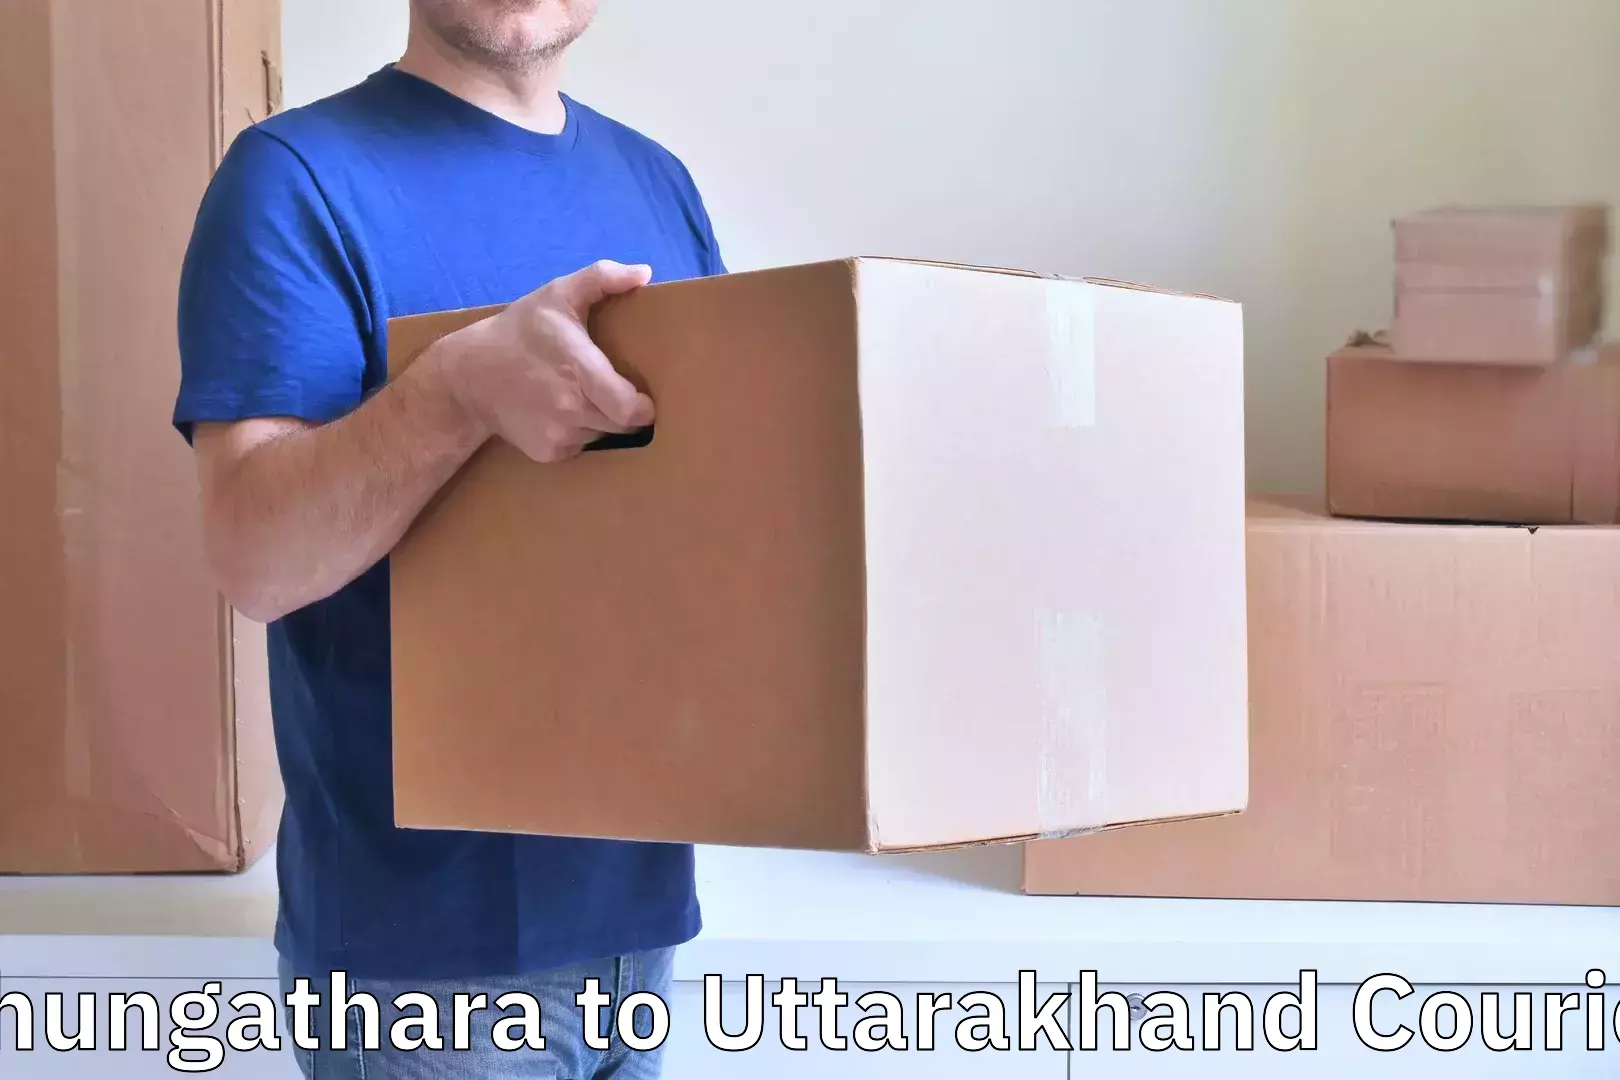 Baggage shipping advice Chungathara to Uttarakhand